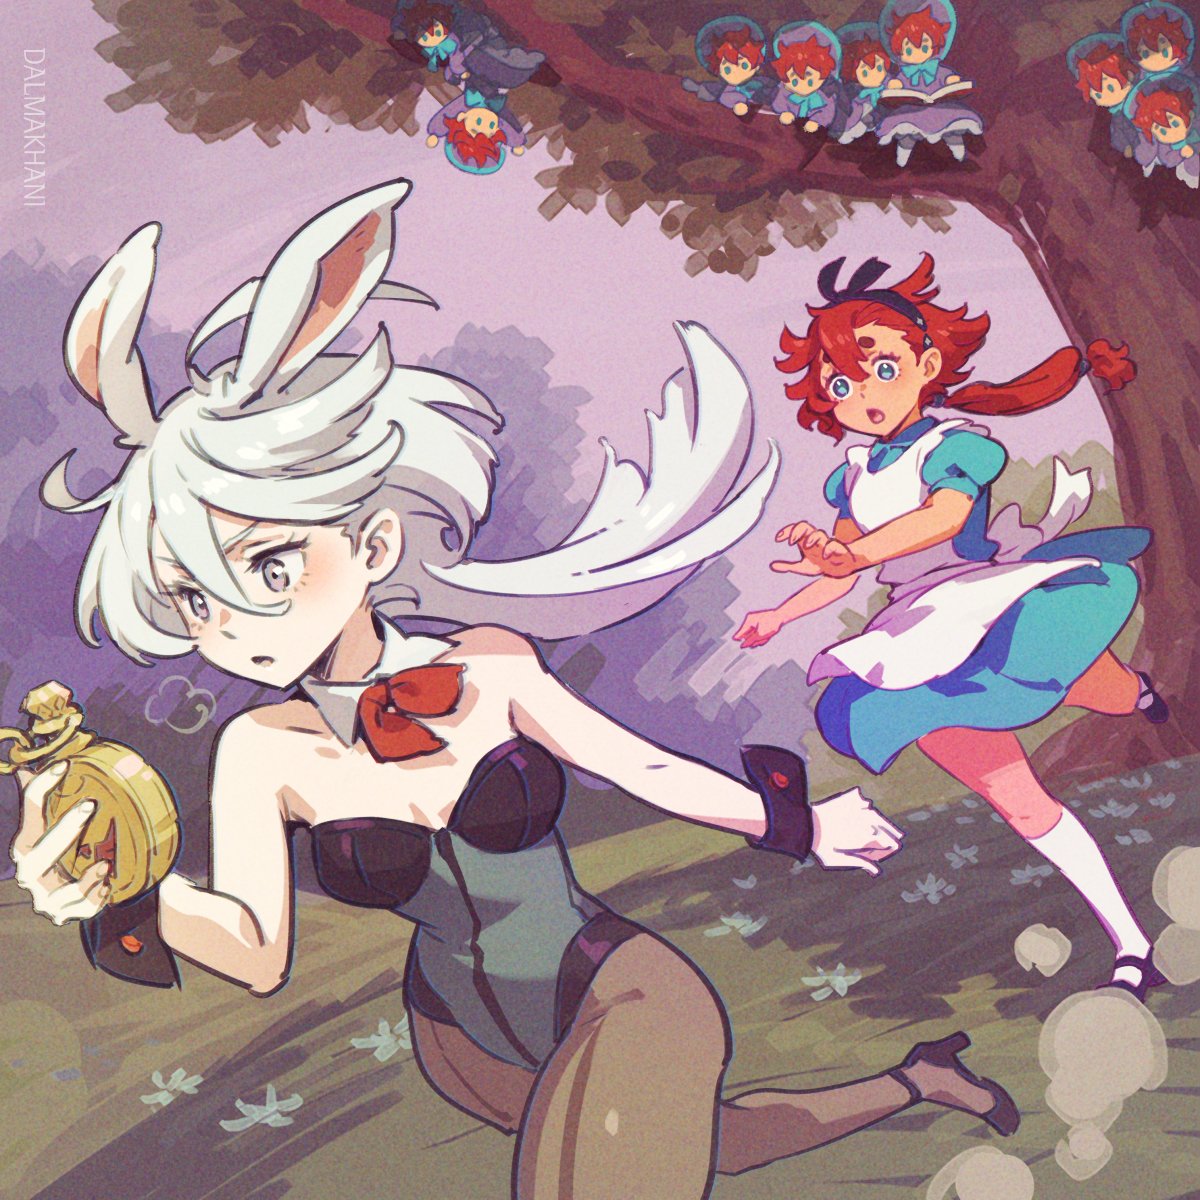 🐇Suletta in Wonderland 1
スレッタは、白いウサギを追いかけることにしました。
#水星の魔女 #G_Witch